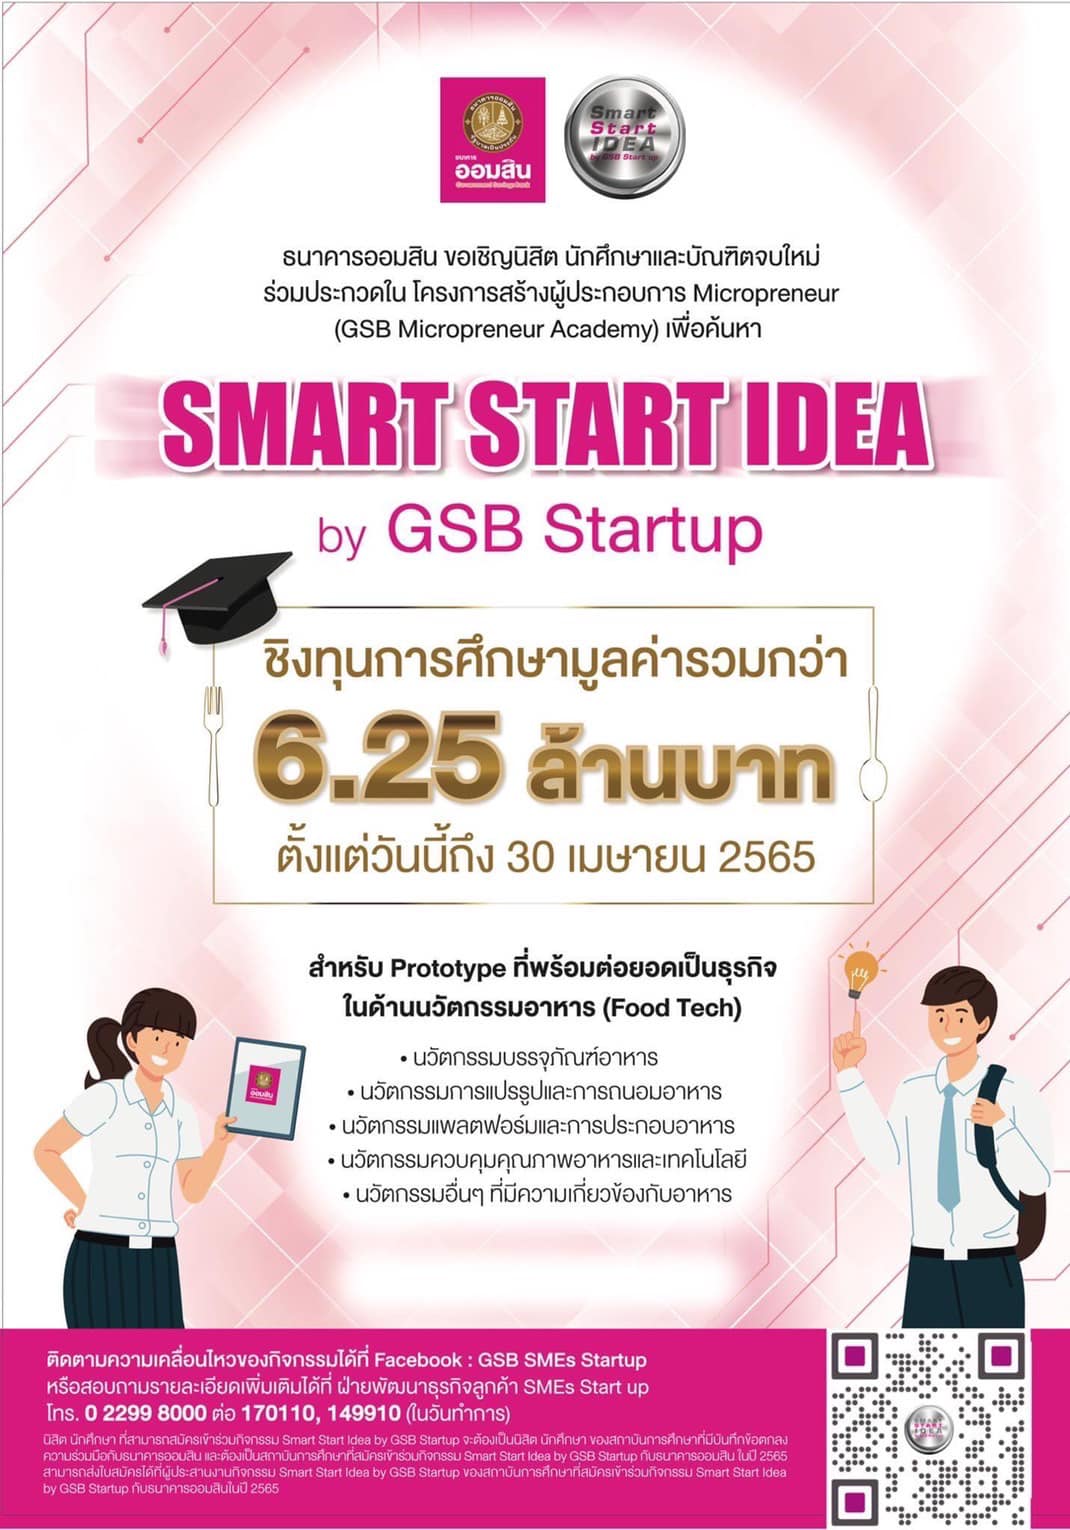 กิจกรรมประกวด Smart Start Idea by GSB Startup ประจำปี 2565 ภายใต้โครงการสร้างผู้ประกอบการ Micropreneur (GSB Micropreneur Academy)